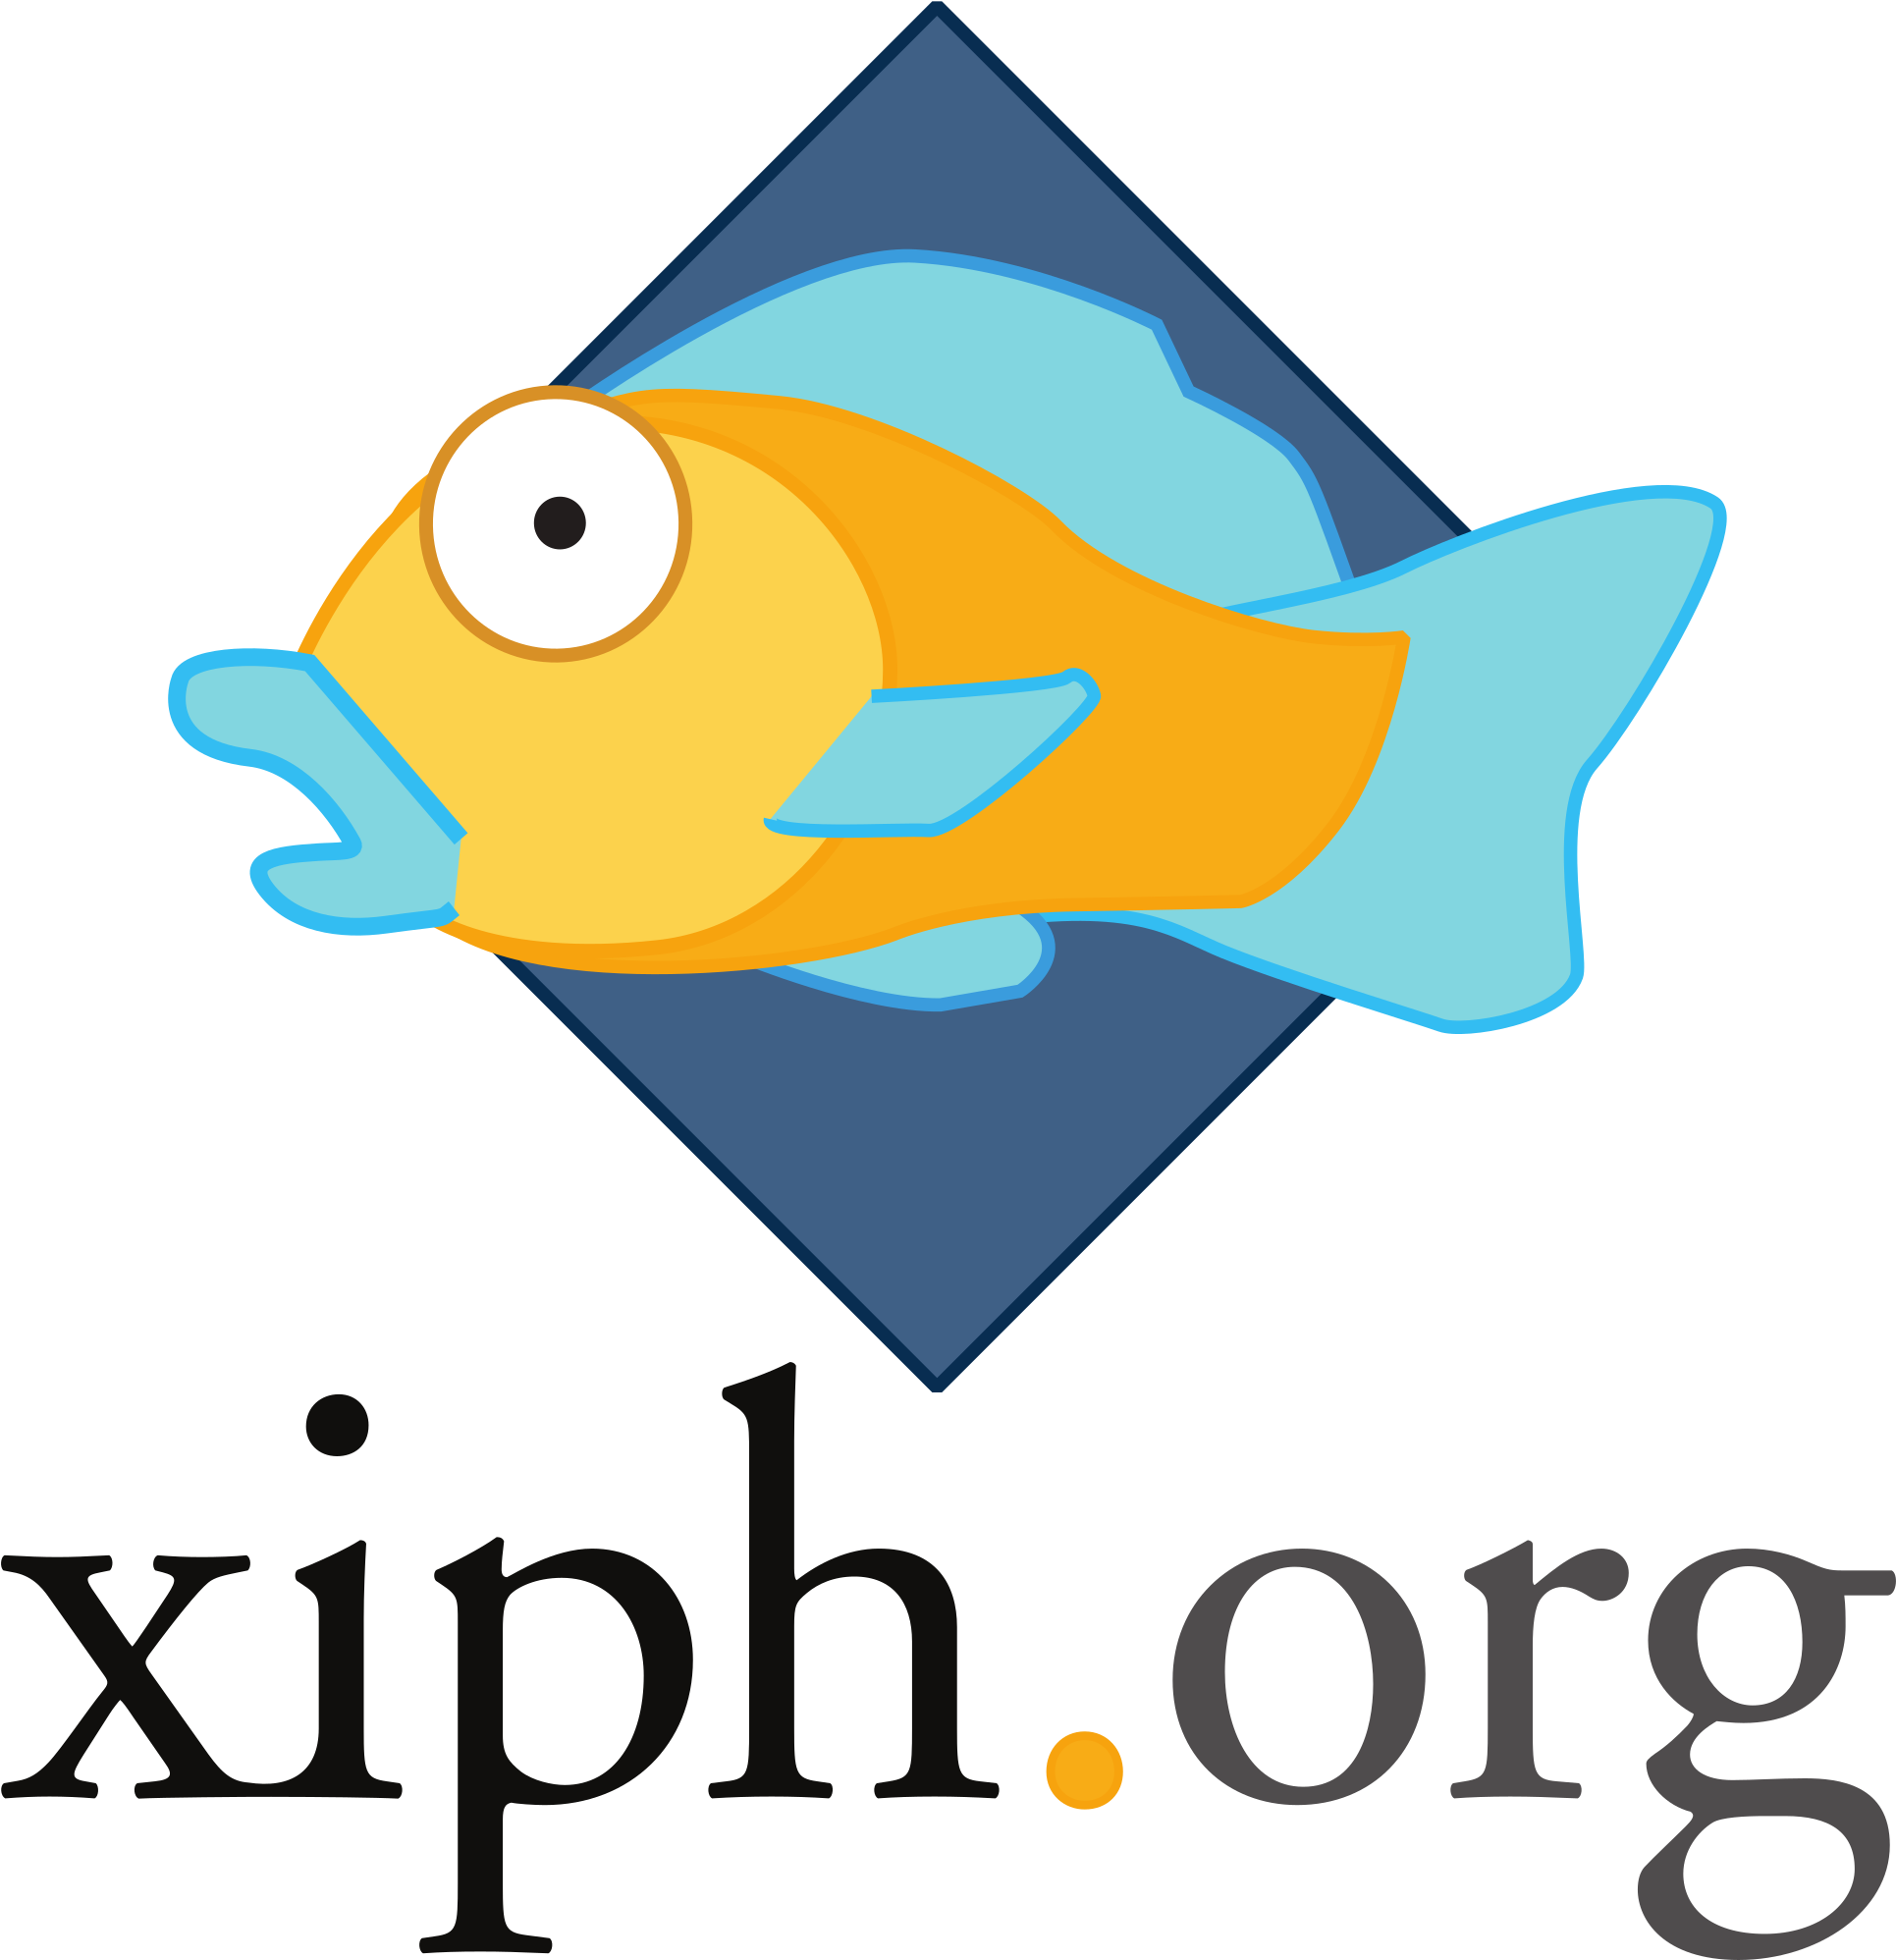 Open - Xiph Org (2000x2000)